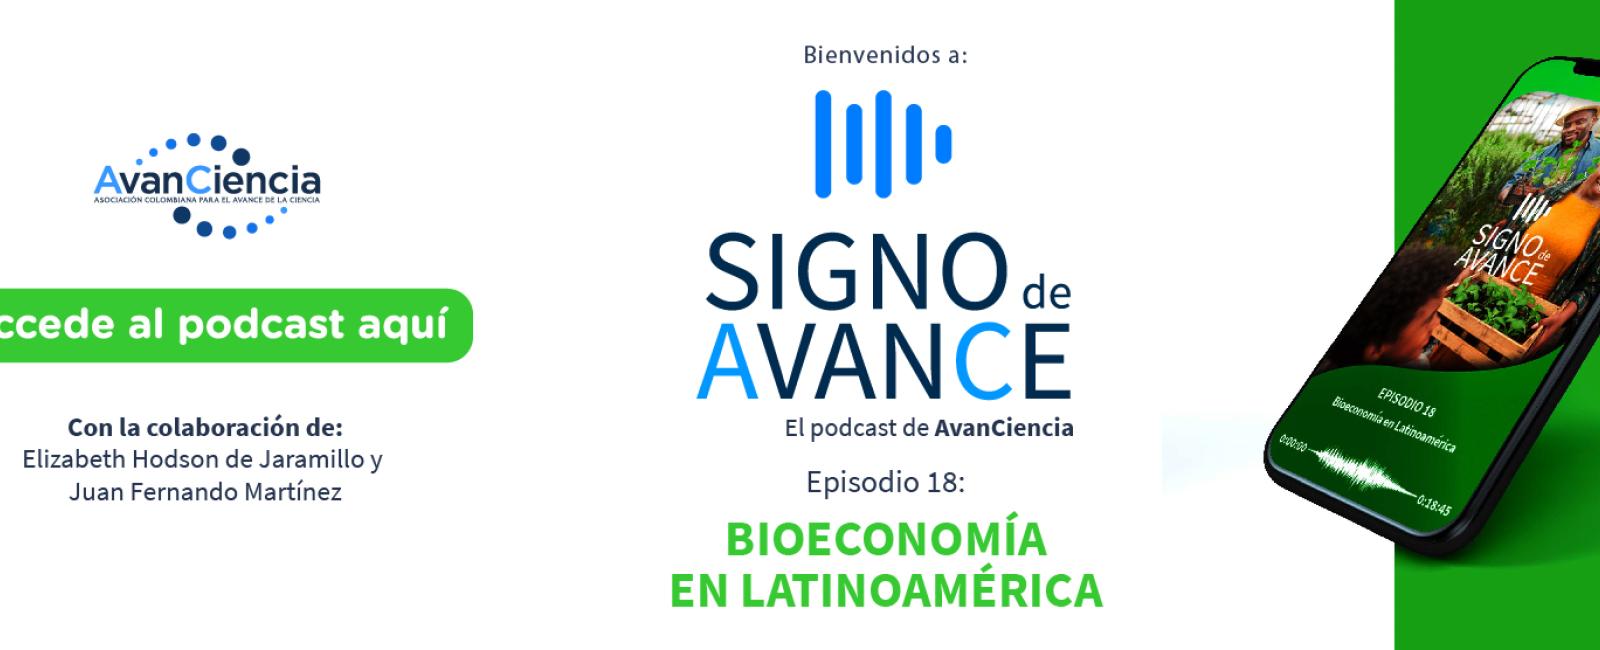 Bioeconomía en Latinoamérica